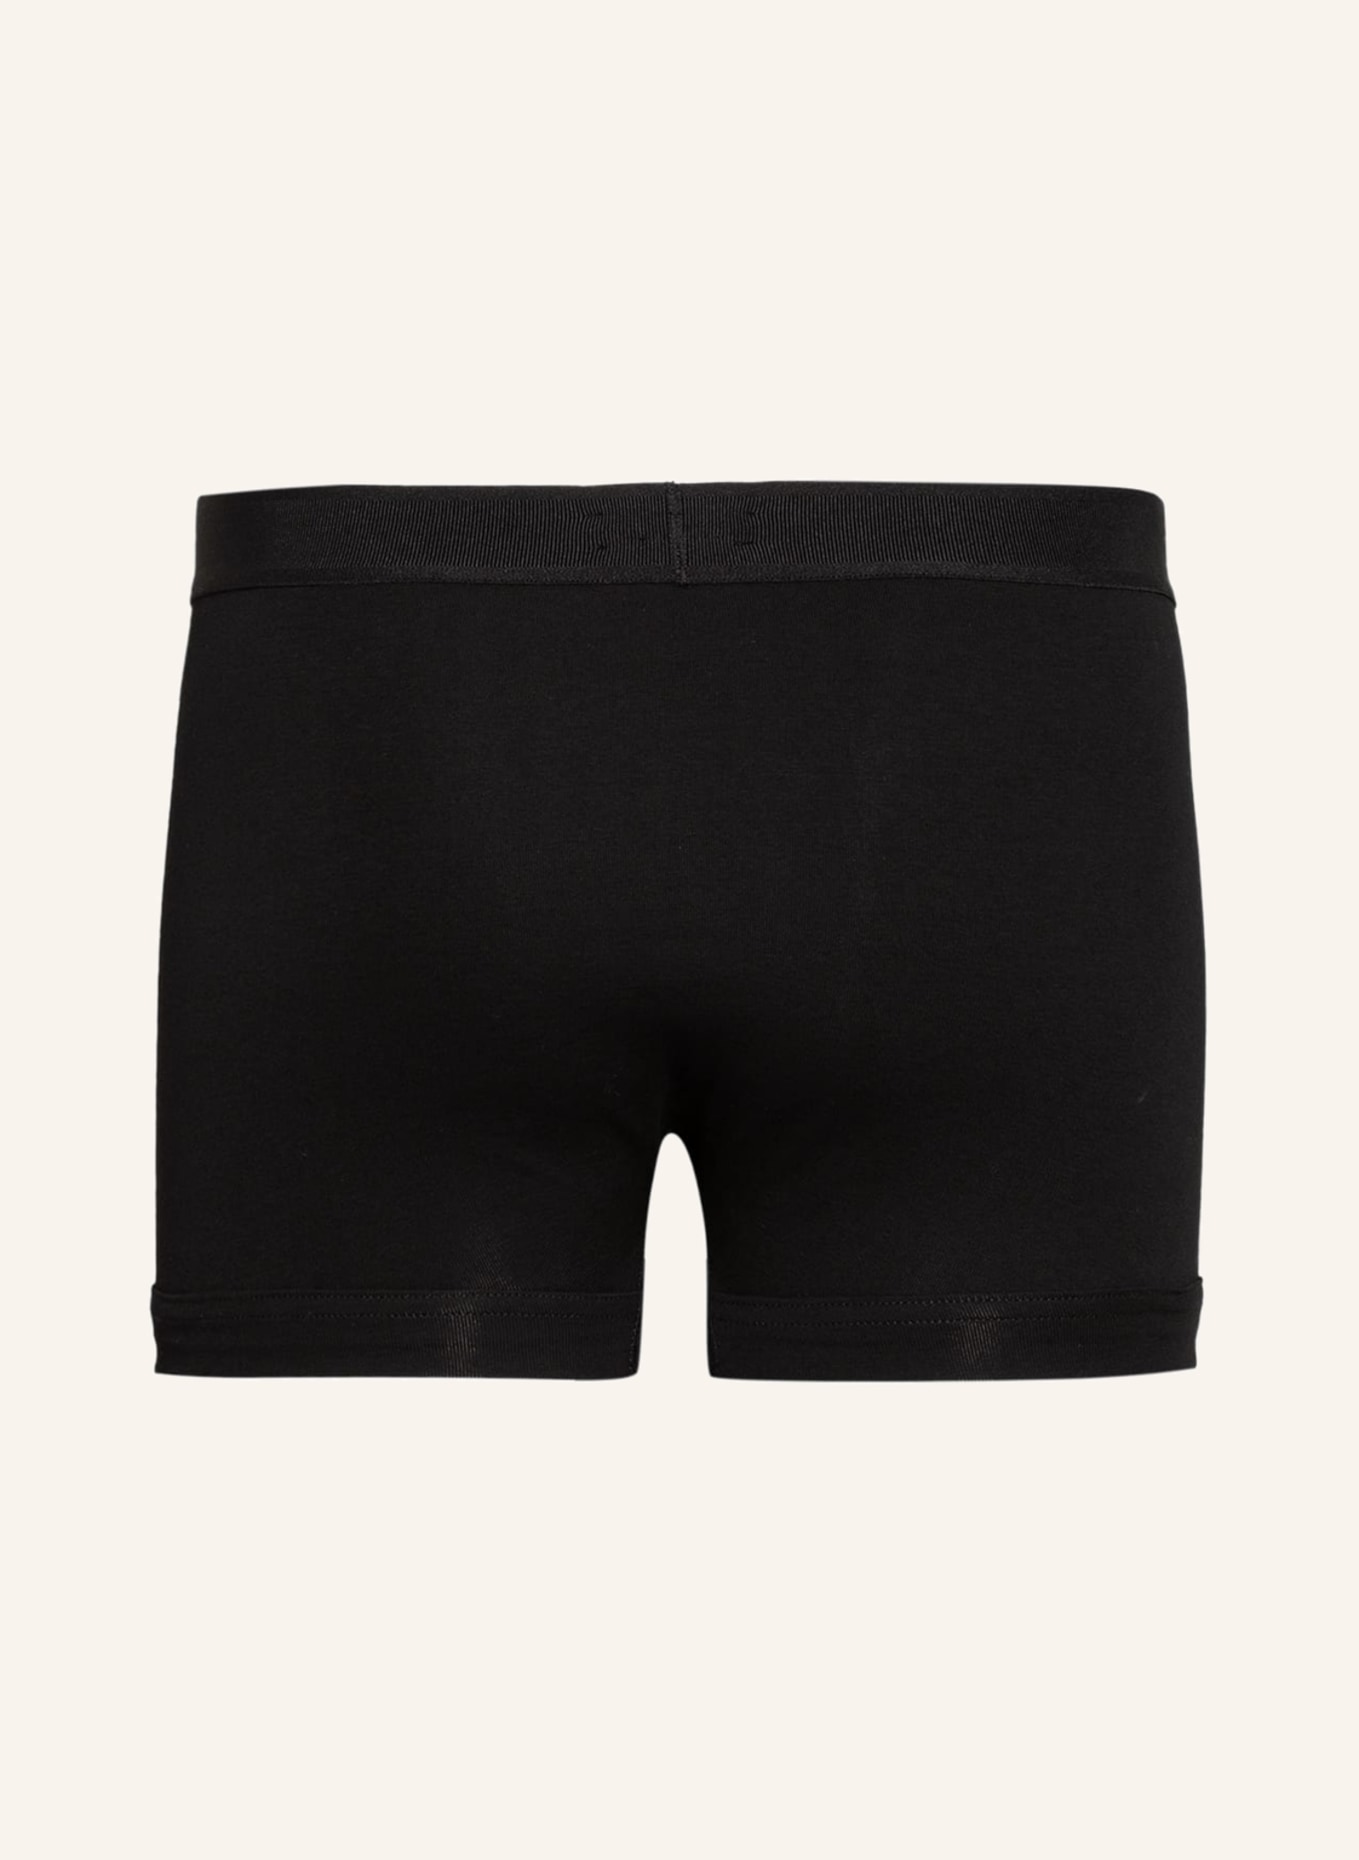 TOM FORD 2-pack boxer shorts, Color: BLACK (Image 2)